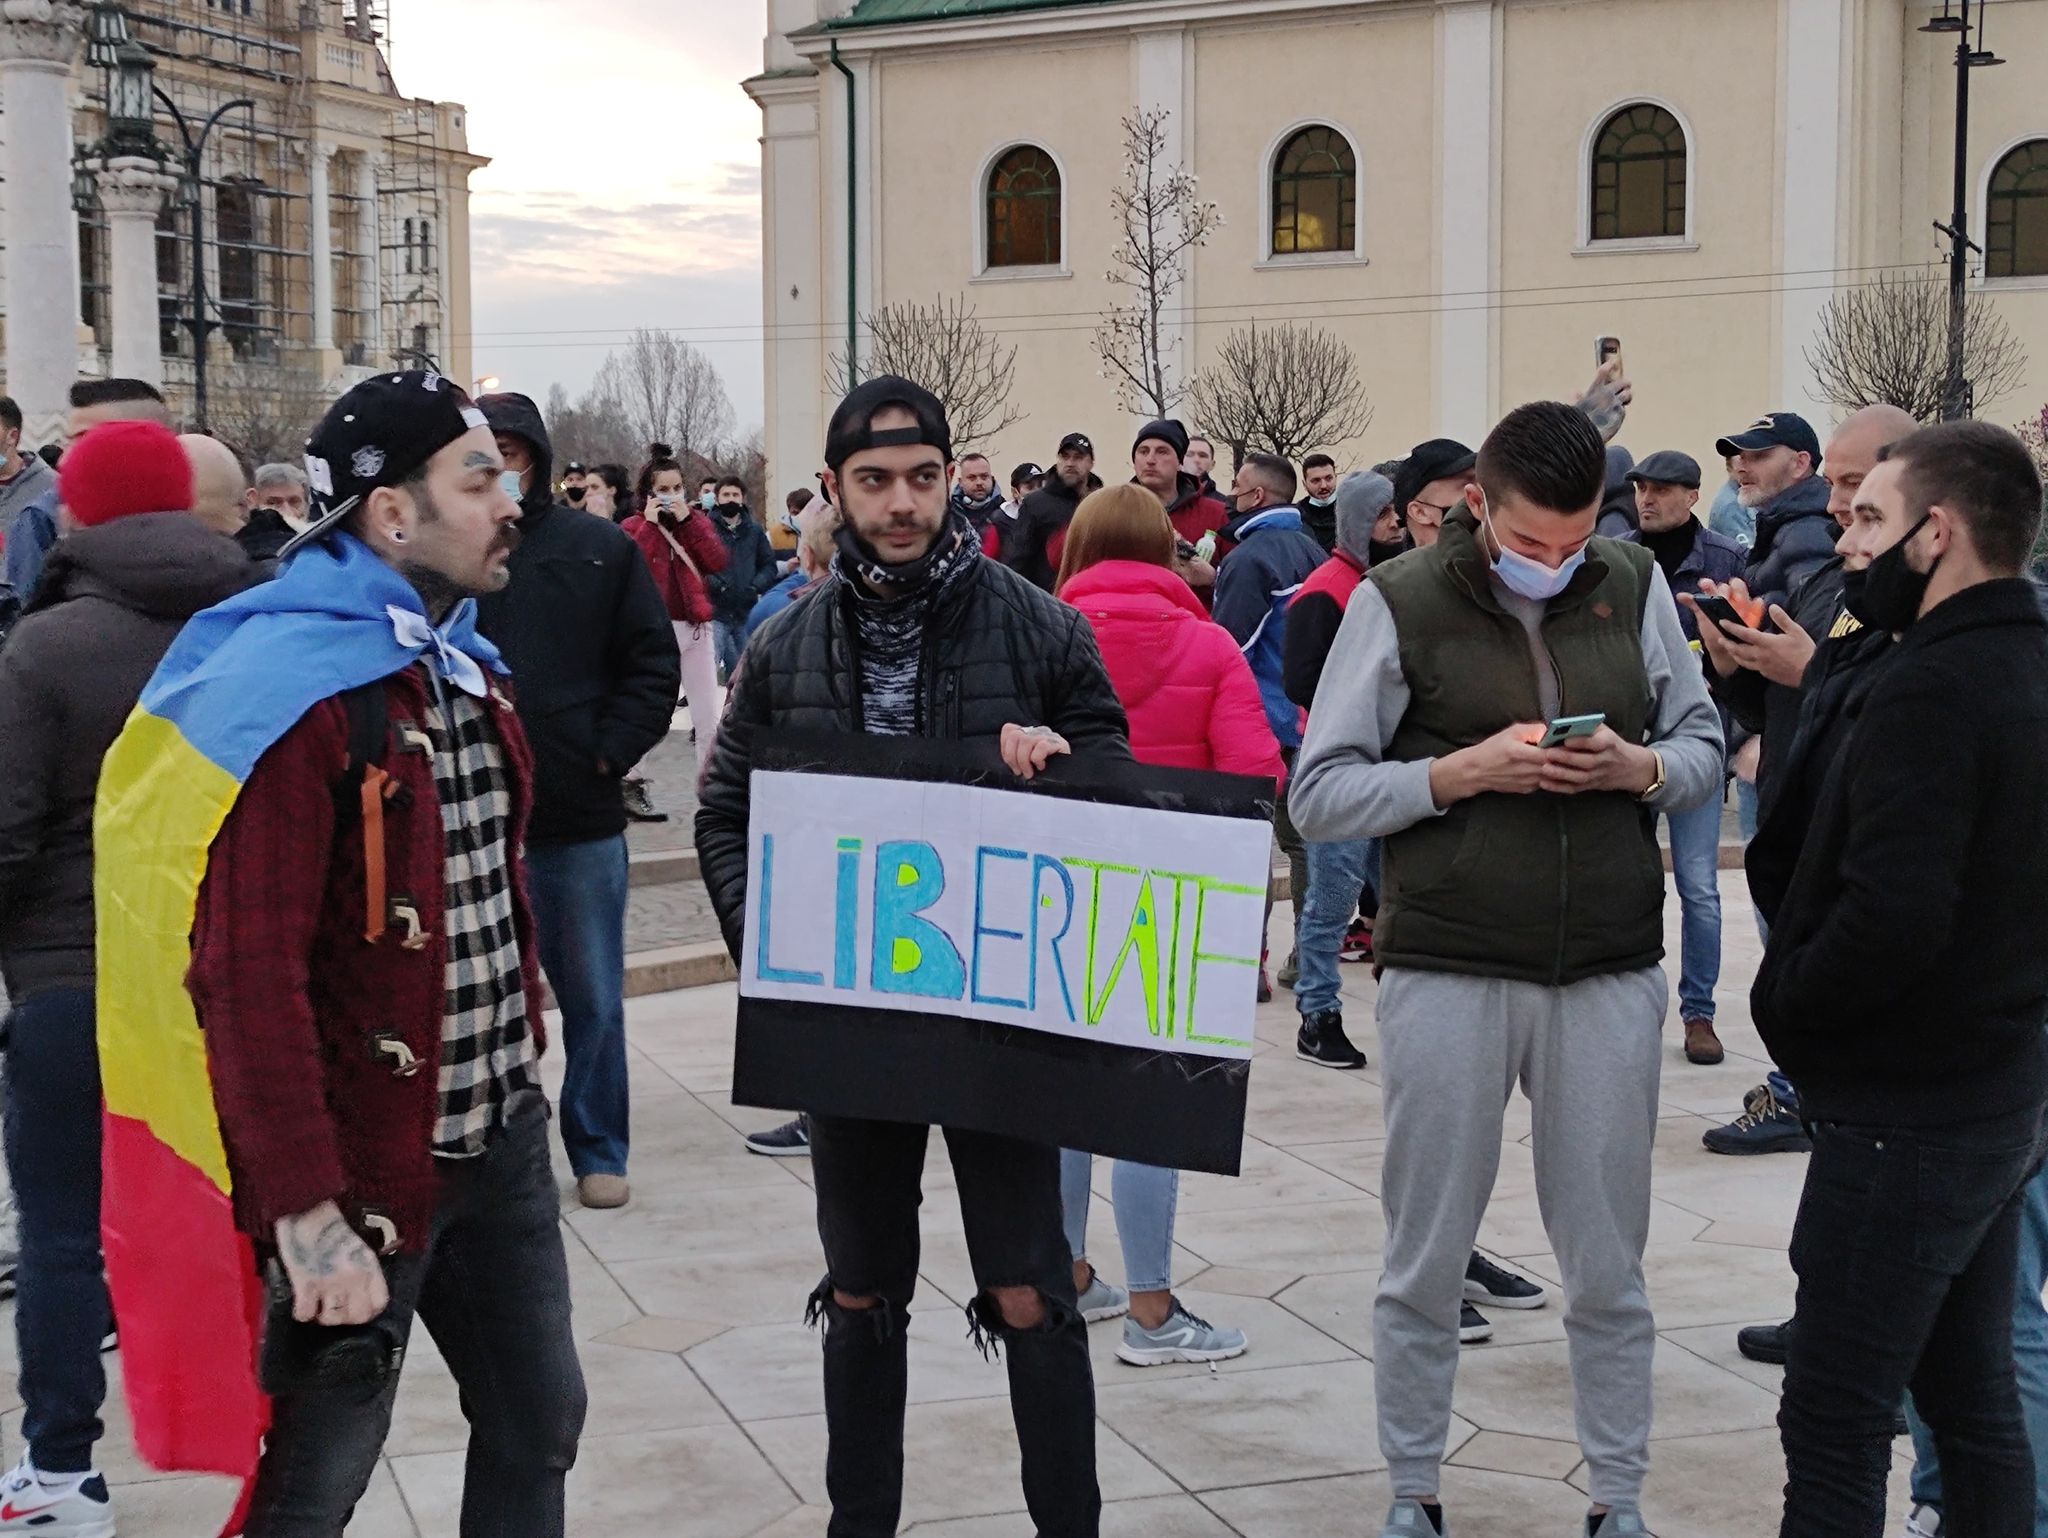 FOTO: Protest față de restricțiile anti Covid-19 29.03.2021